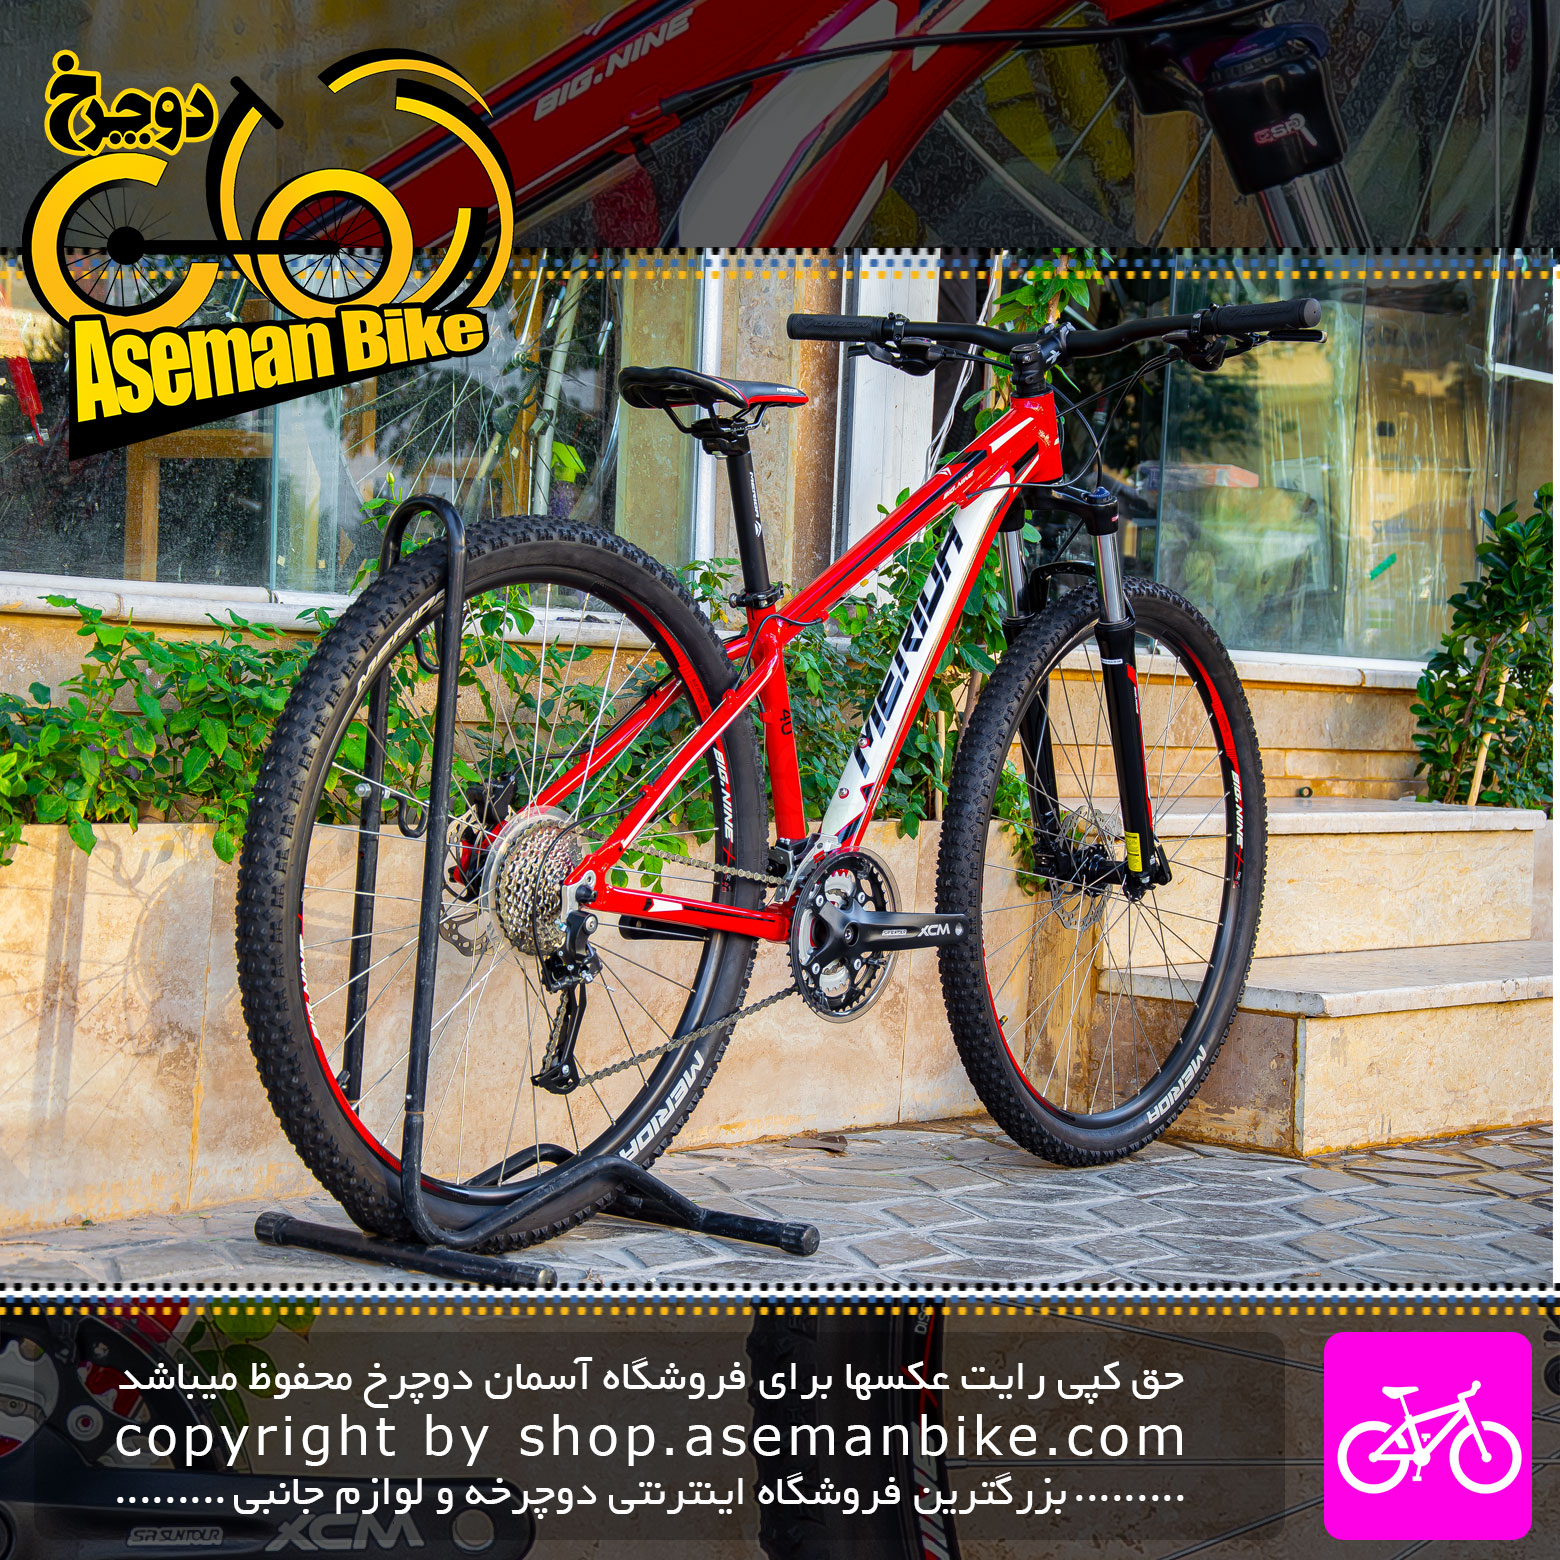 دوچرخه مریدا مدل بیگ ناین 40 دیسک روغن سایز 29 رنگ قرمز 27 سرعته Merida Bicycle BIG.NINE 40 Size 29